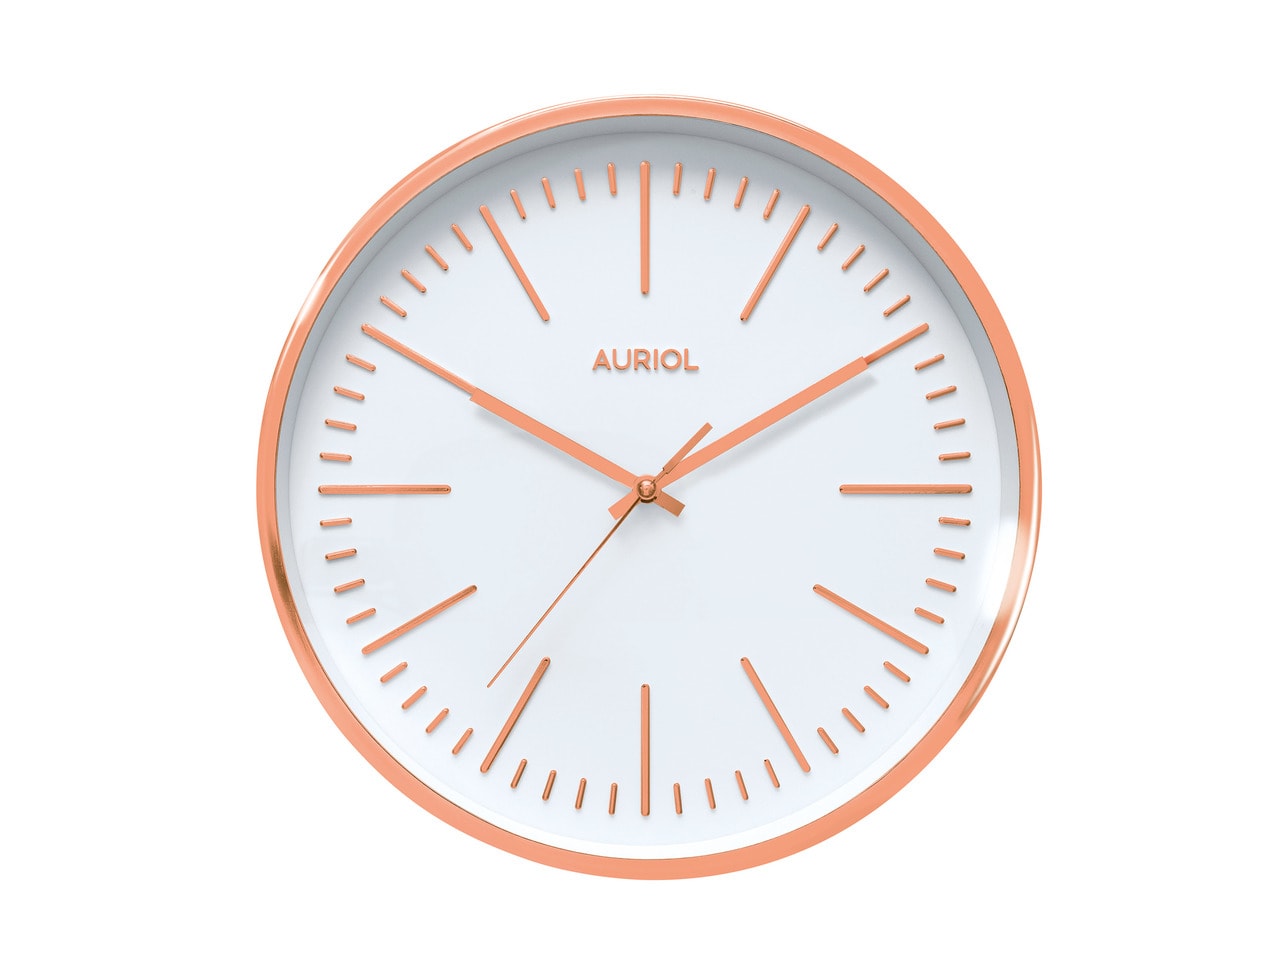 Auriol Wall Clock1